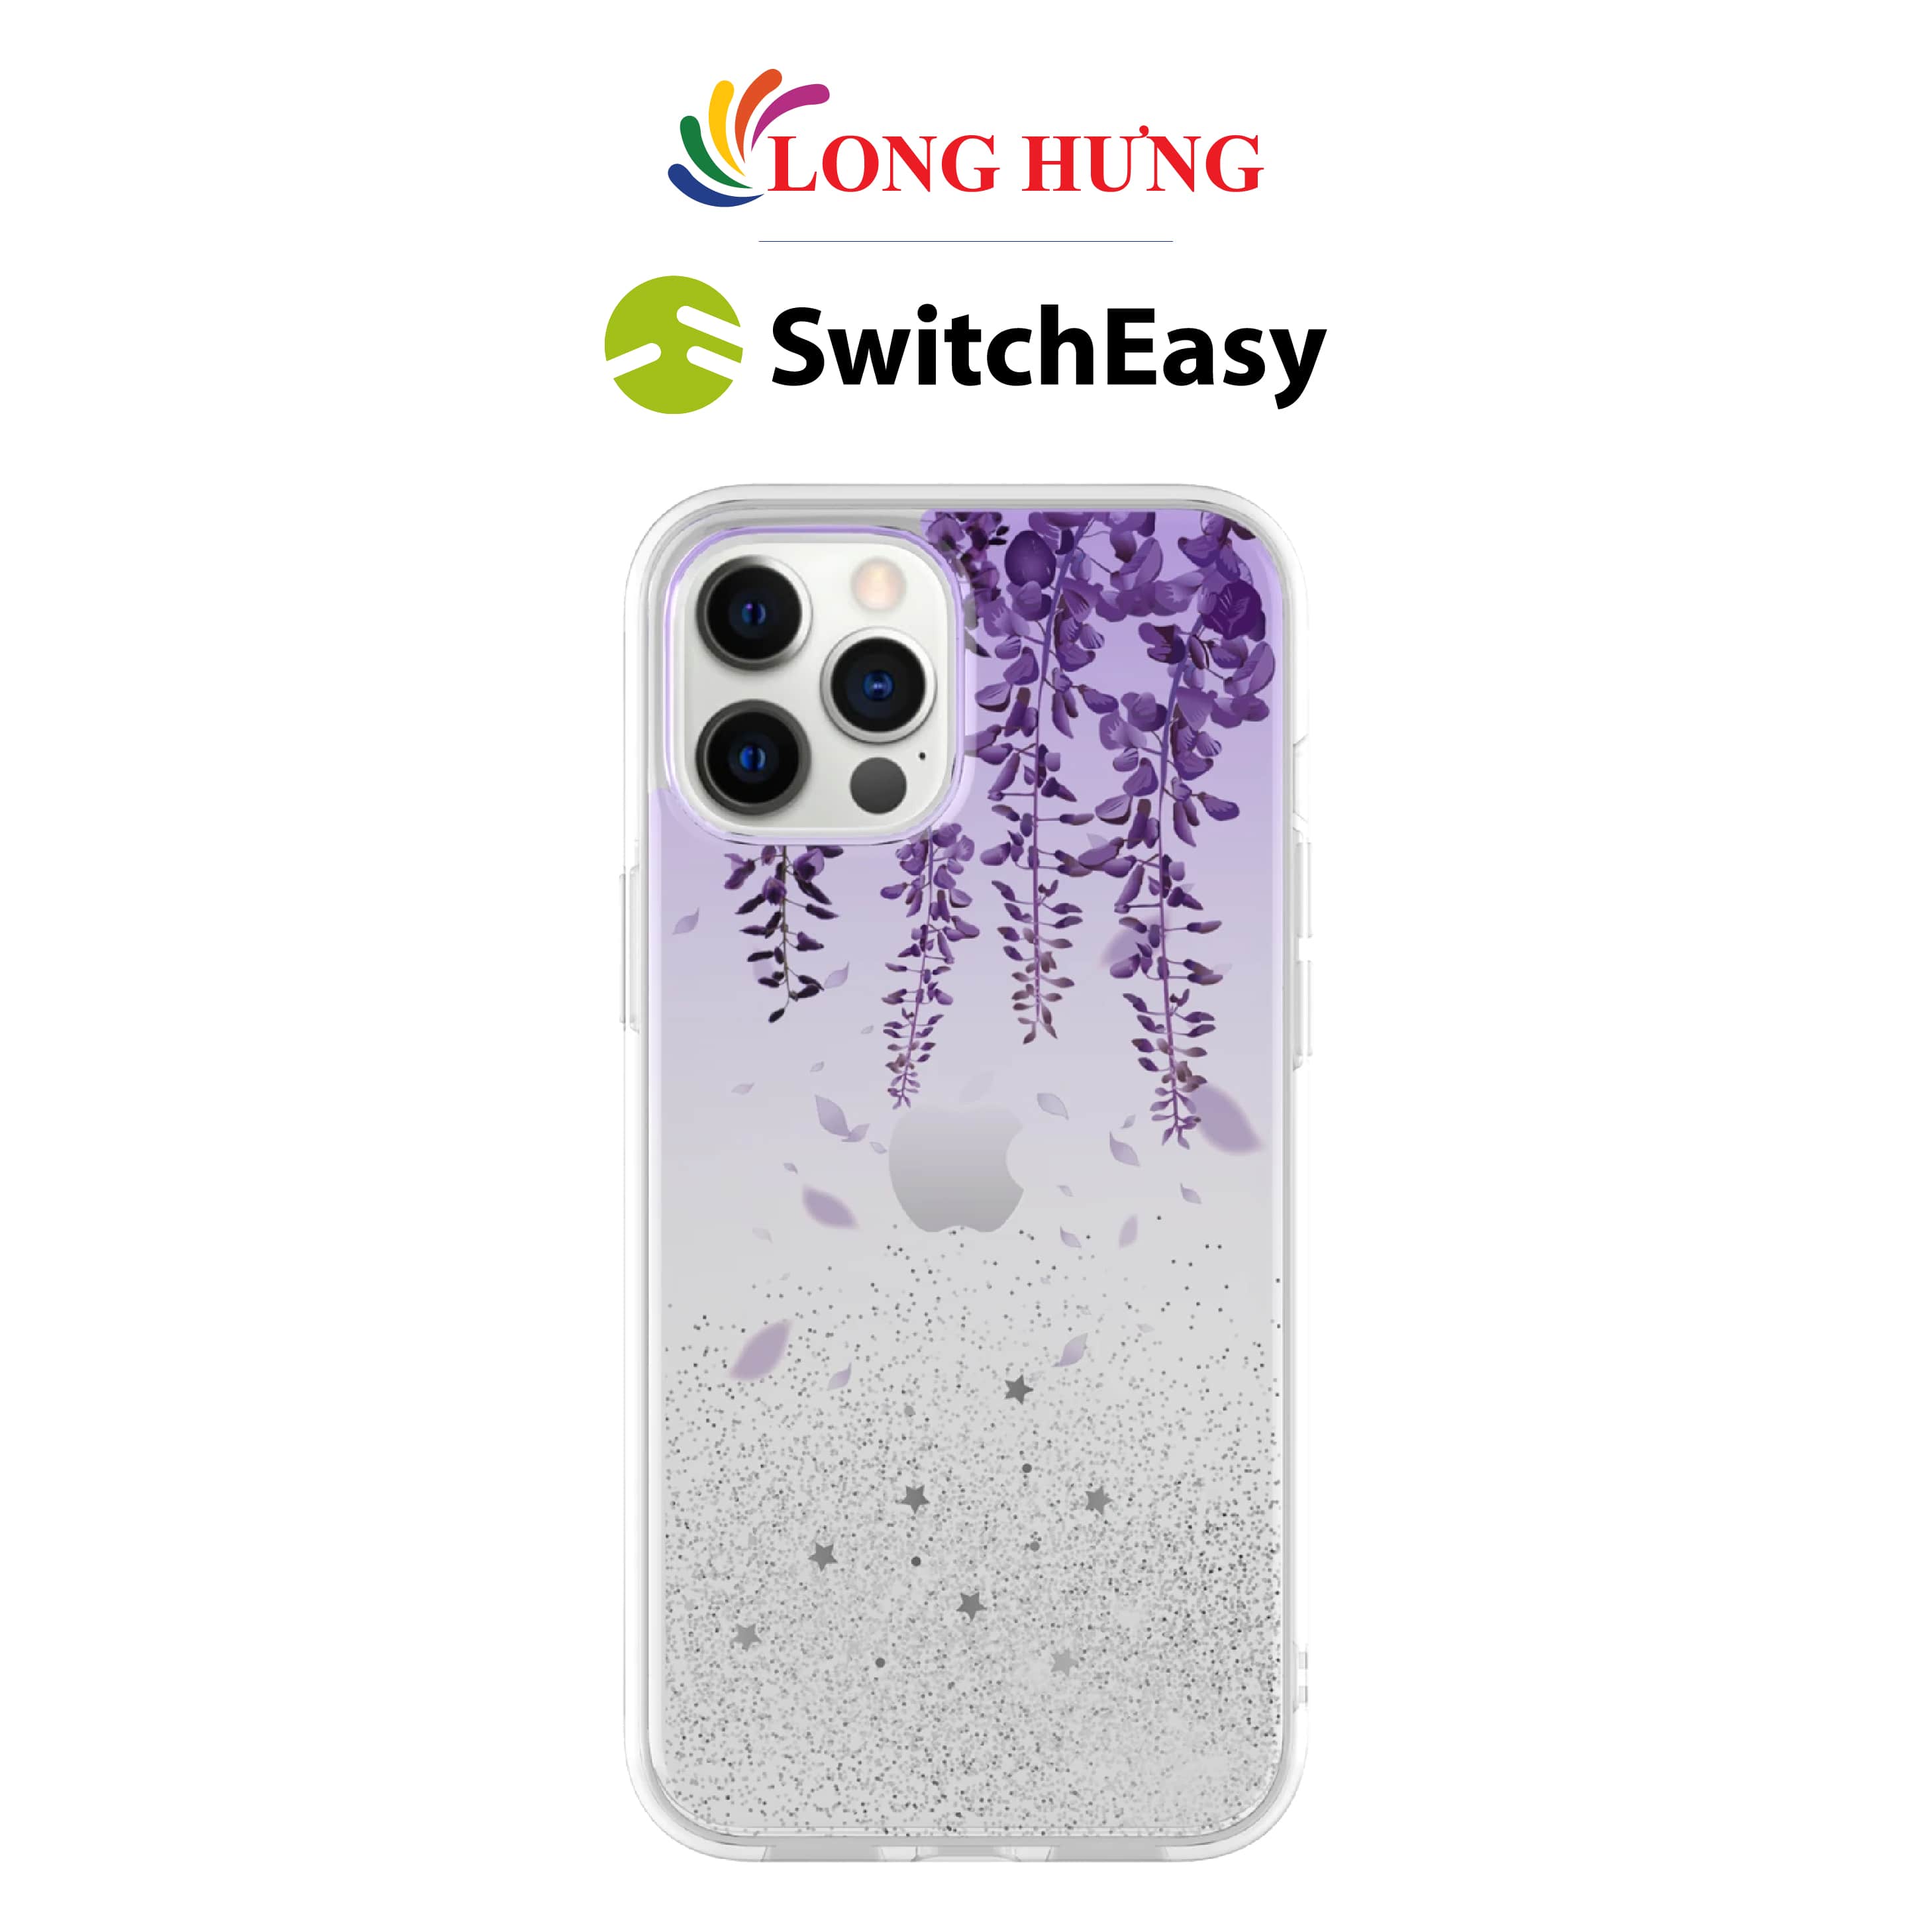 Ốp lưng nhựa cứng SwitchEasy Flash dành cho iPhone 12/12 Pro/12 Pro Max - Hàng chính hãng